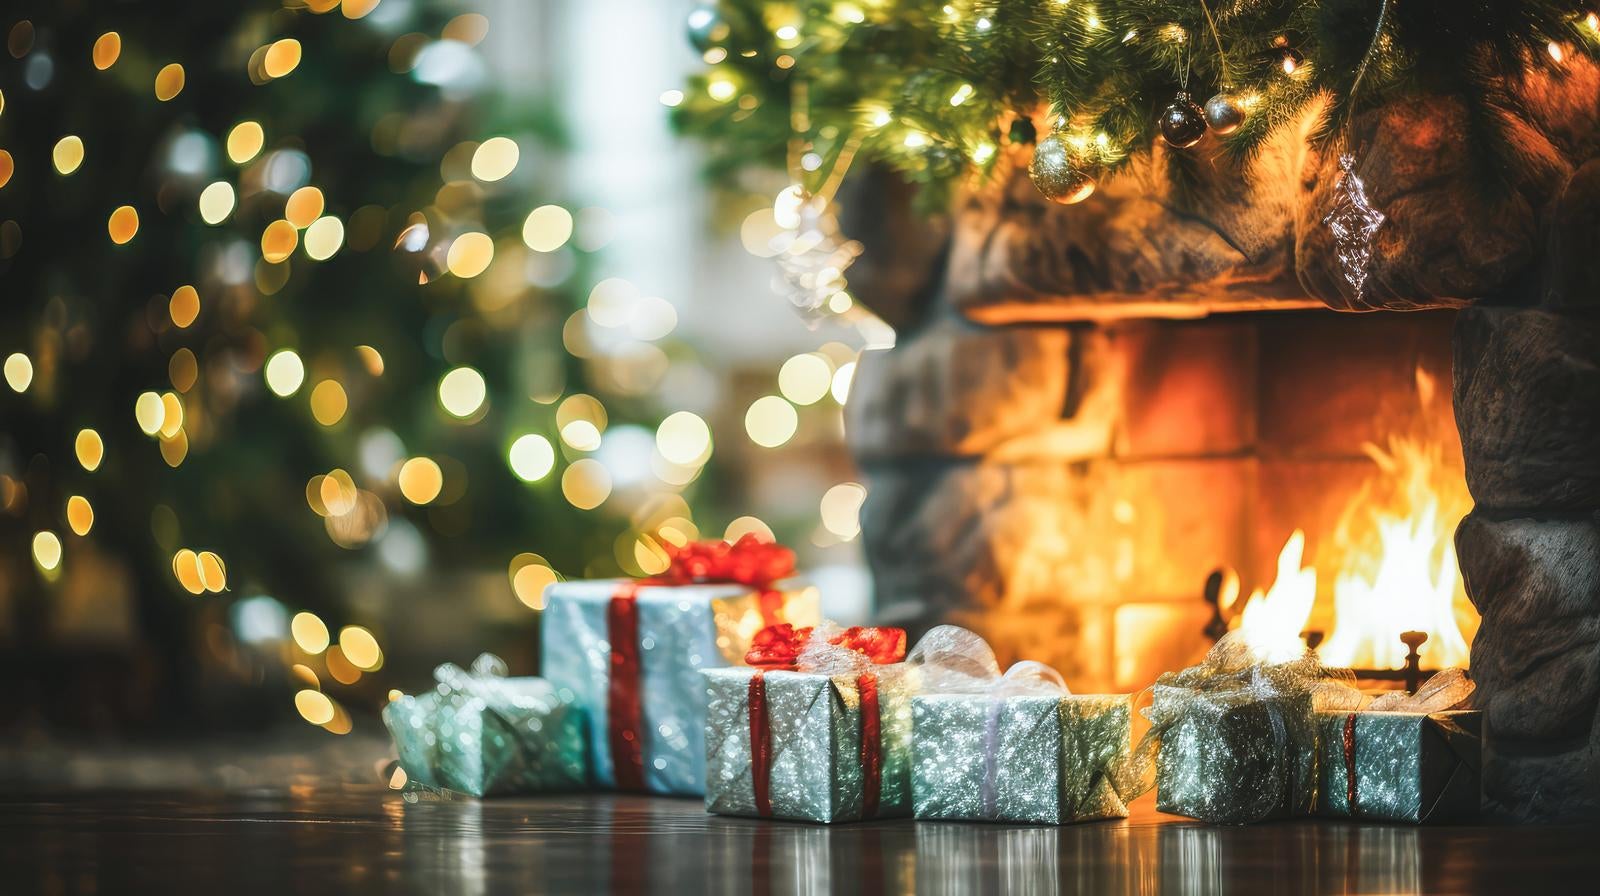 「暖炉とクリスマスプレゼント」の写真